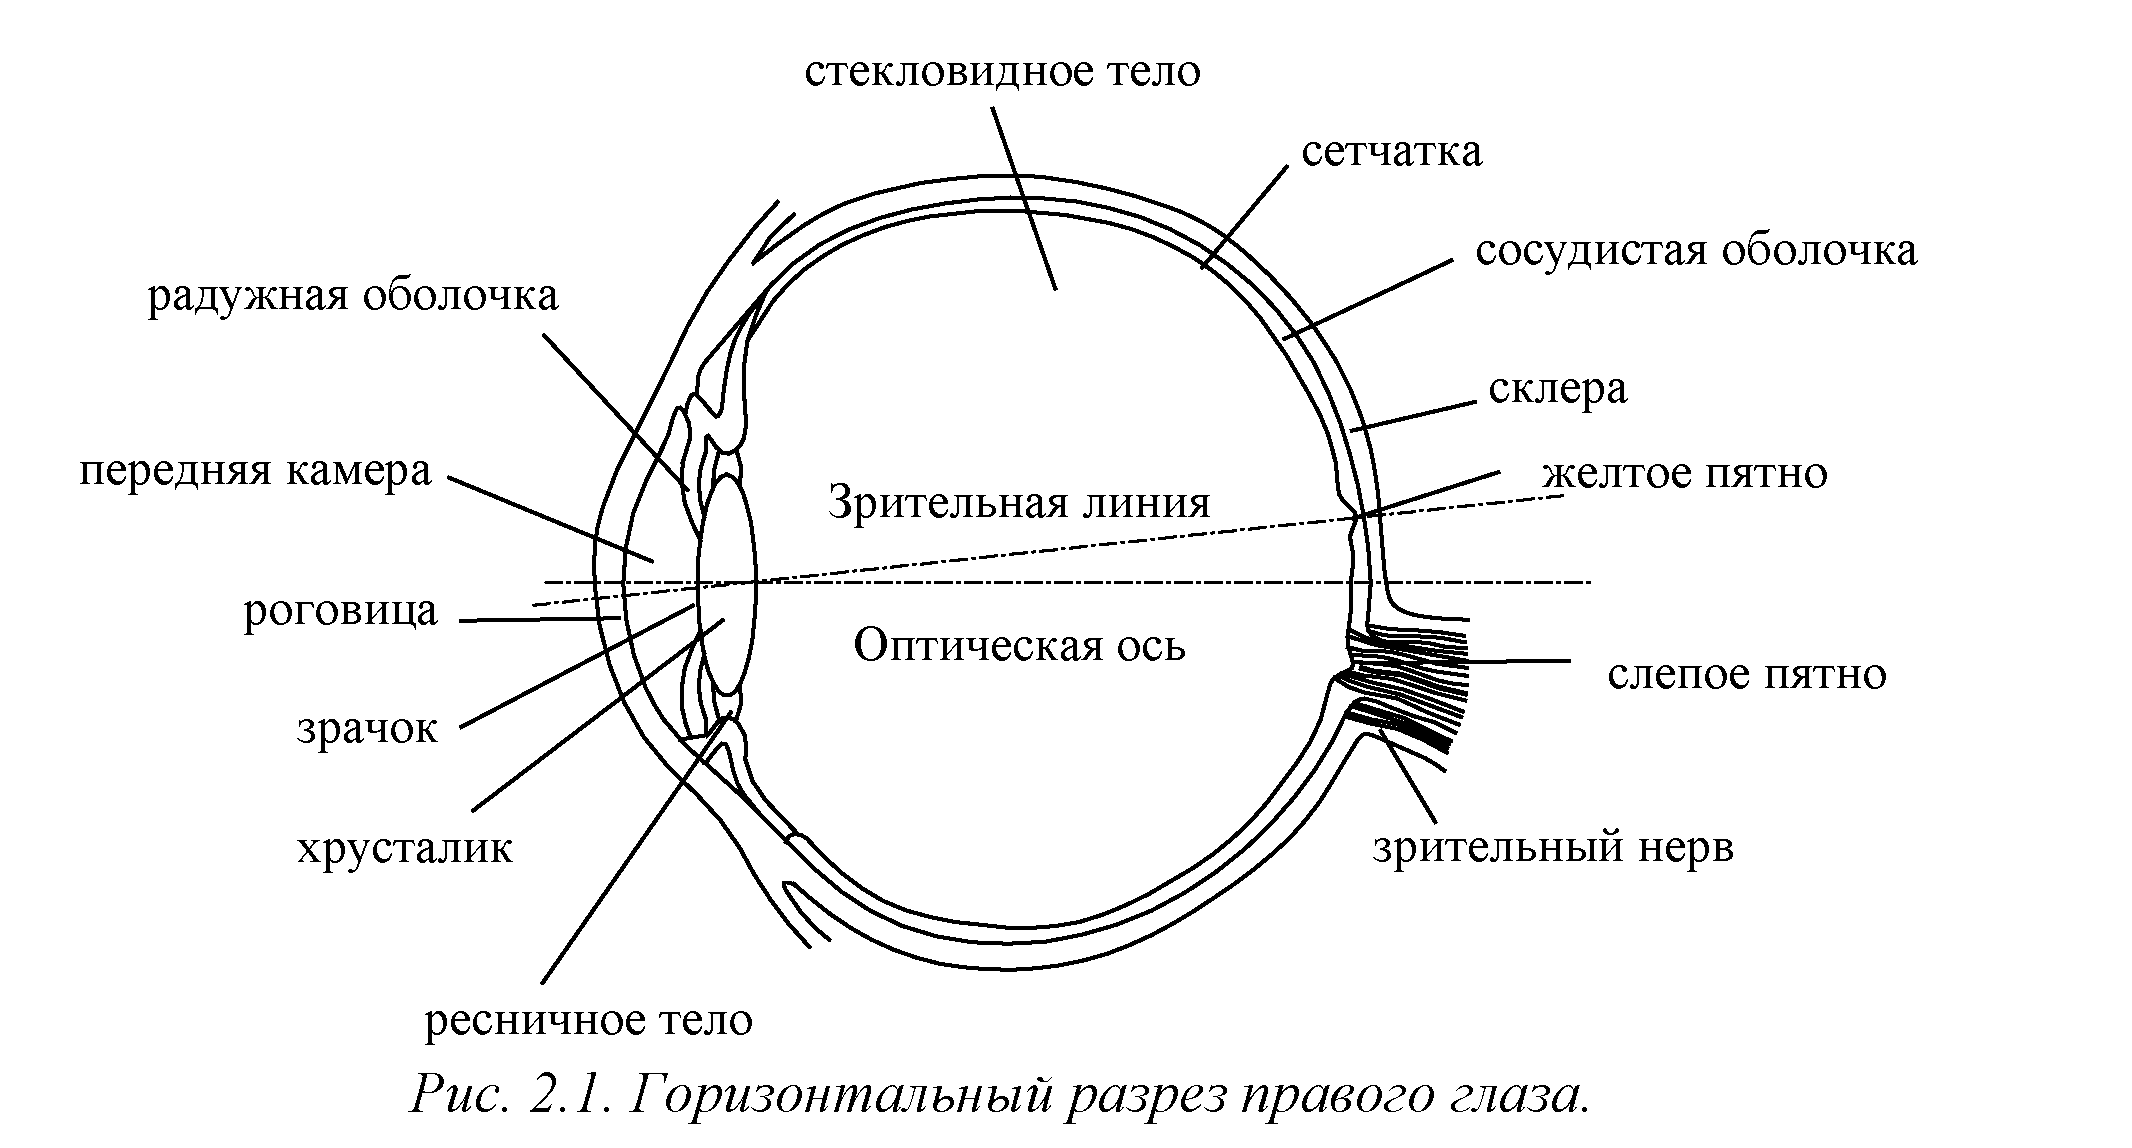 Роговица зрительная зона коры мозга стекловидное тело